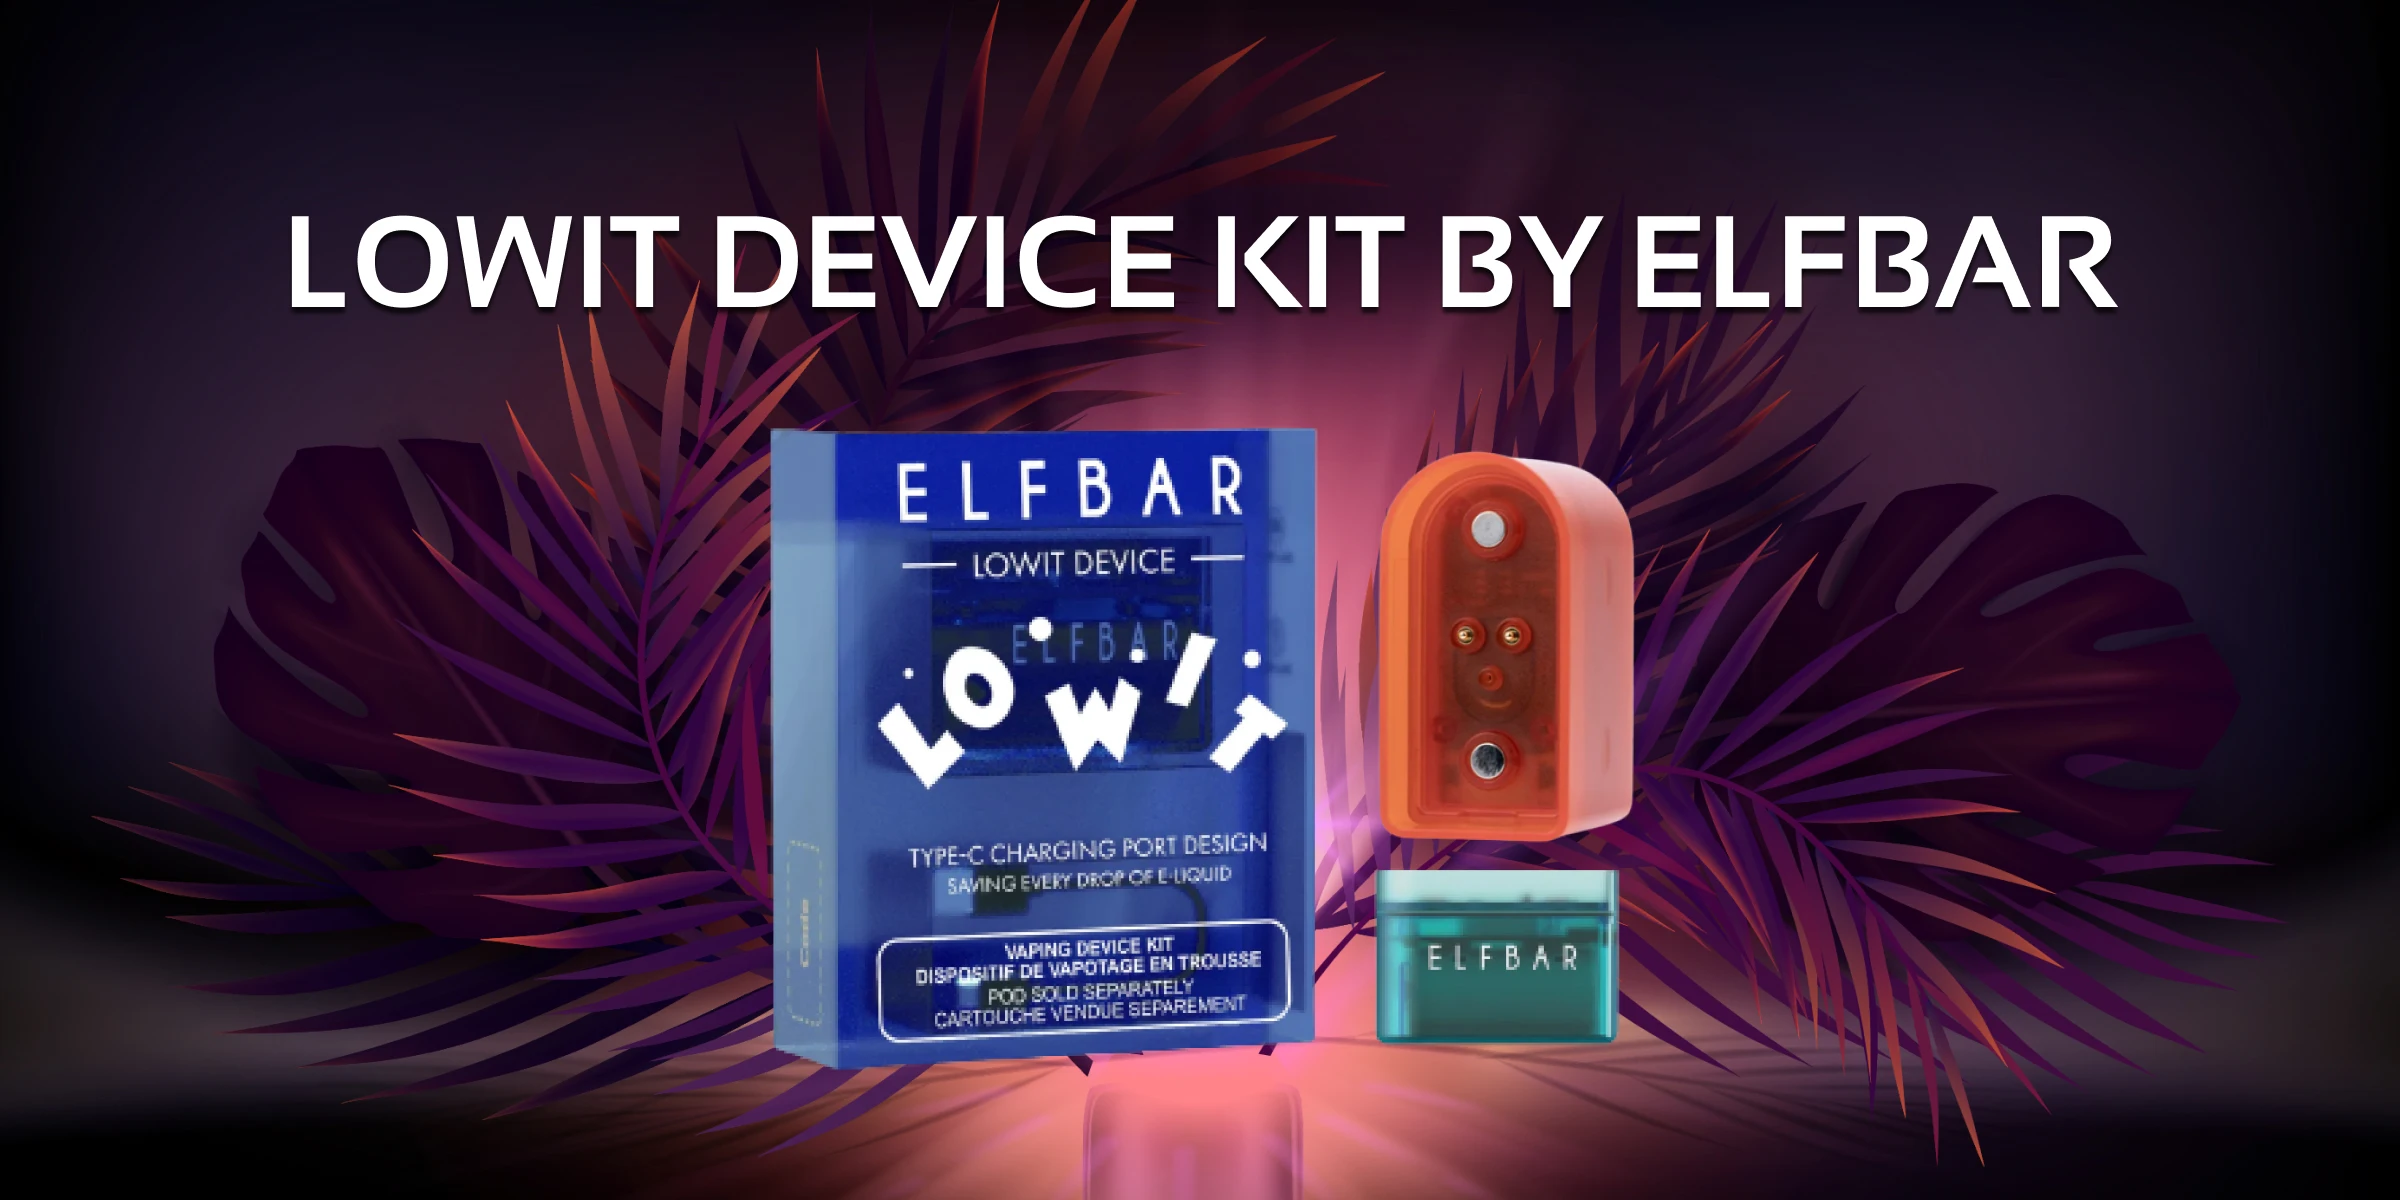 Lowit Device Kit by Elfbar